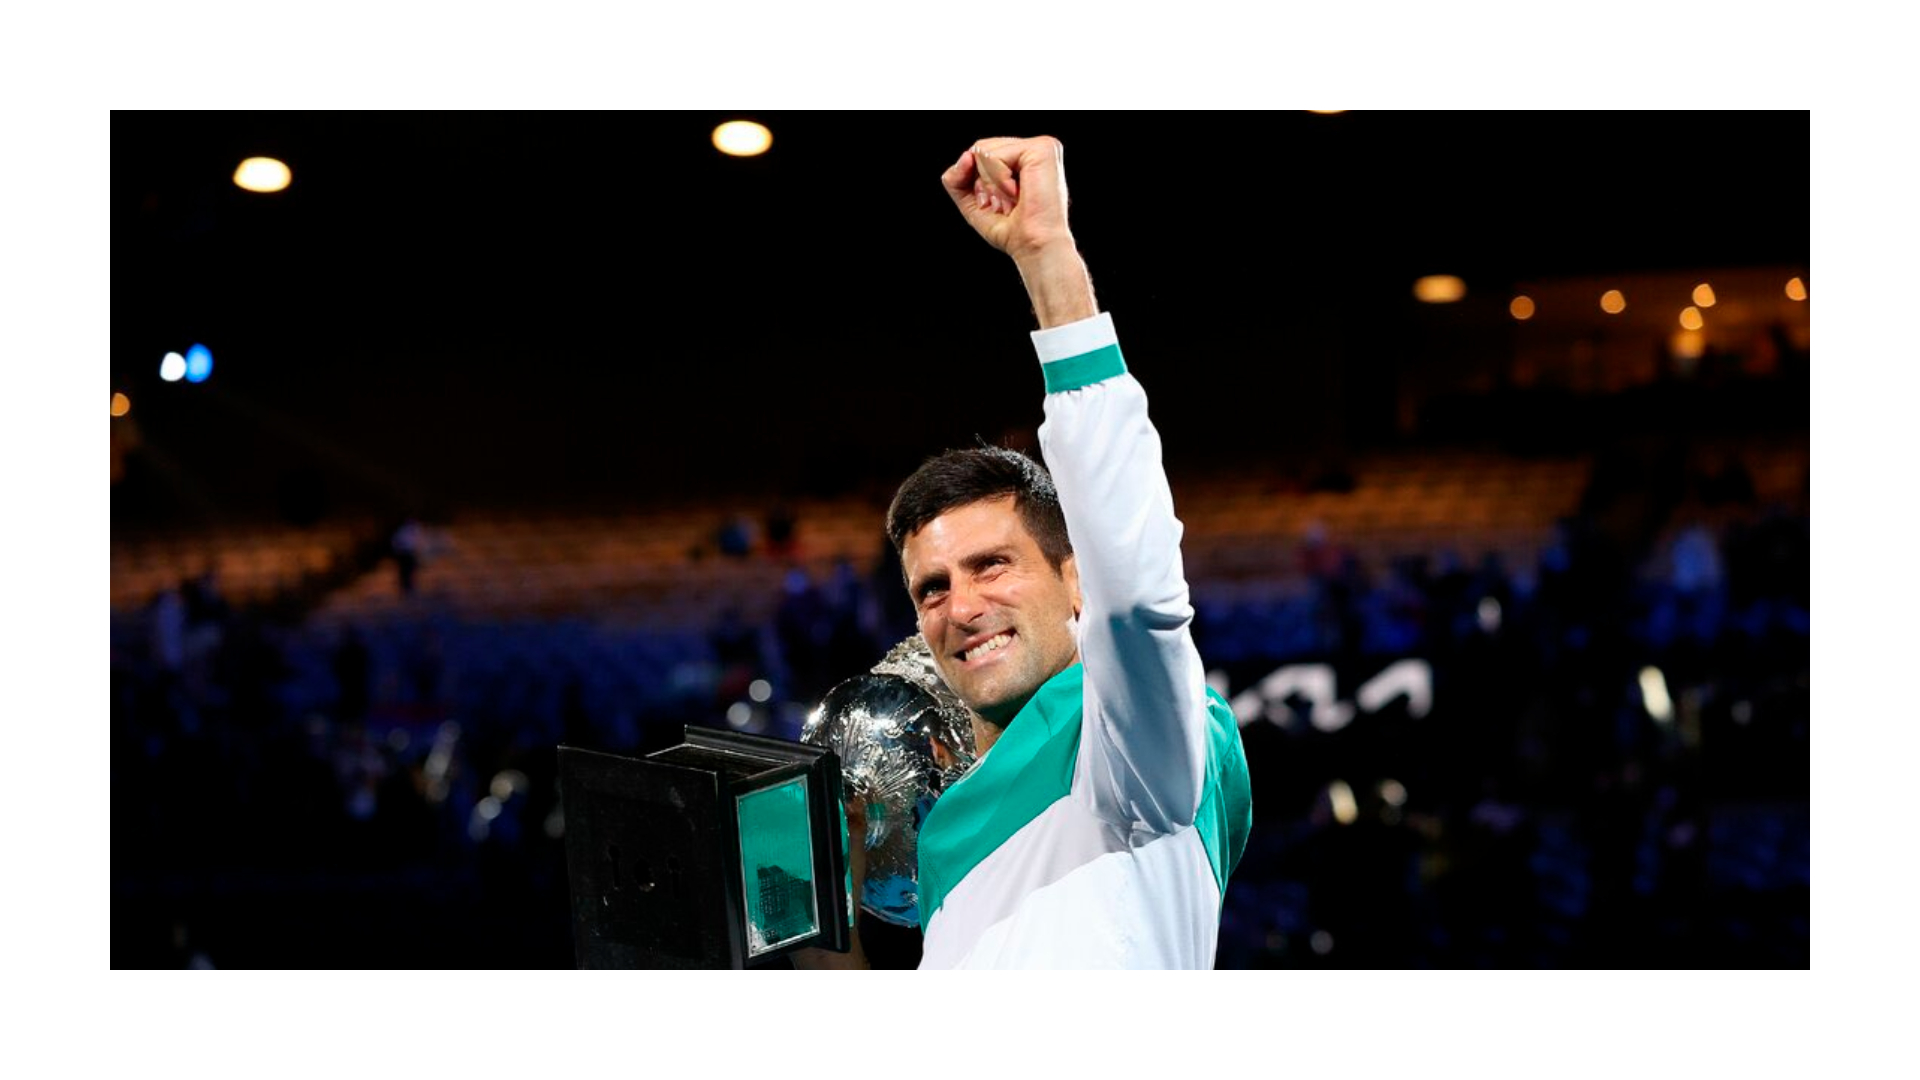 Novak Djokovic file photo; Credit: Novak Djokovic Twitter page